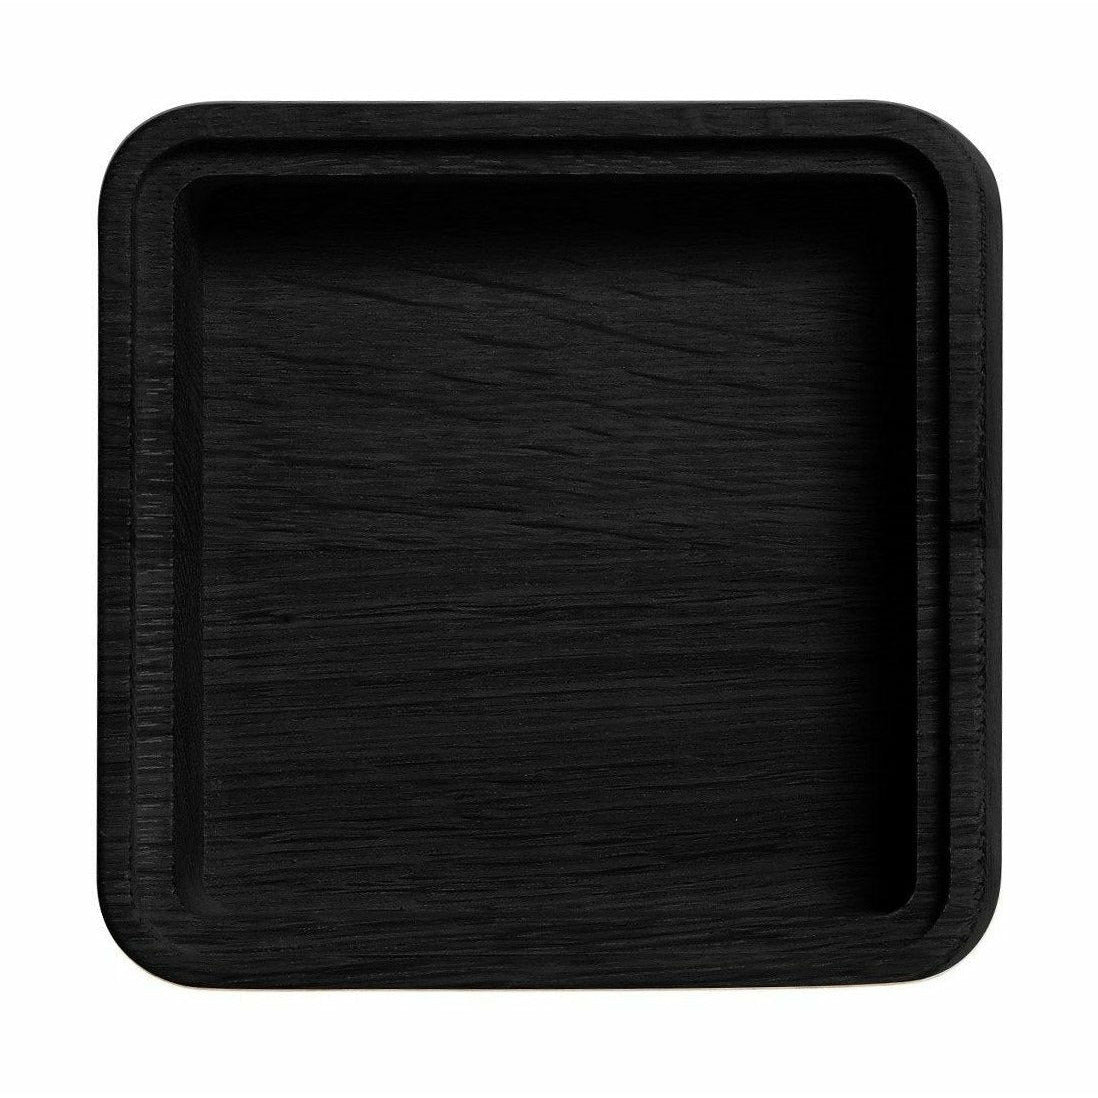 Nábytek Andersen Create Me Box Black, 1 Compartment, 12x12cm